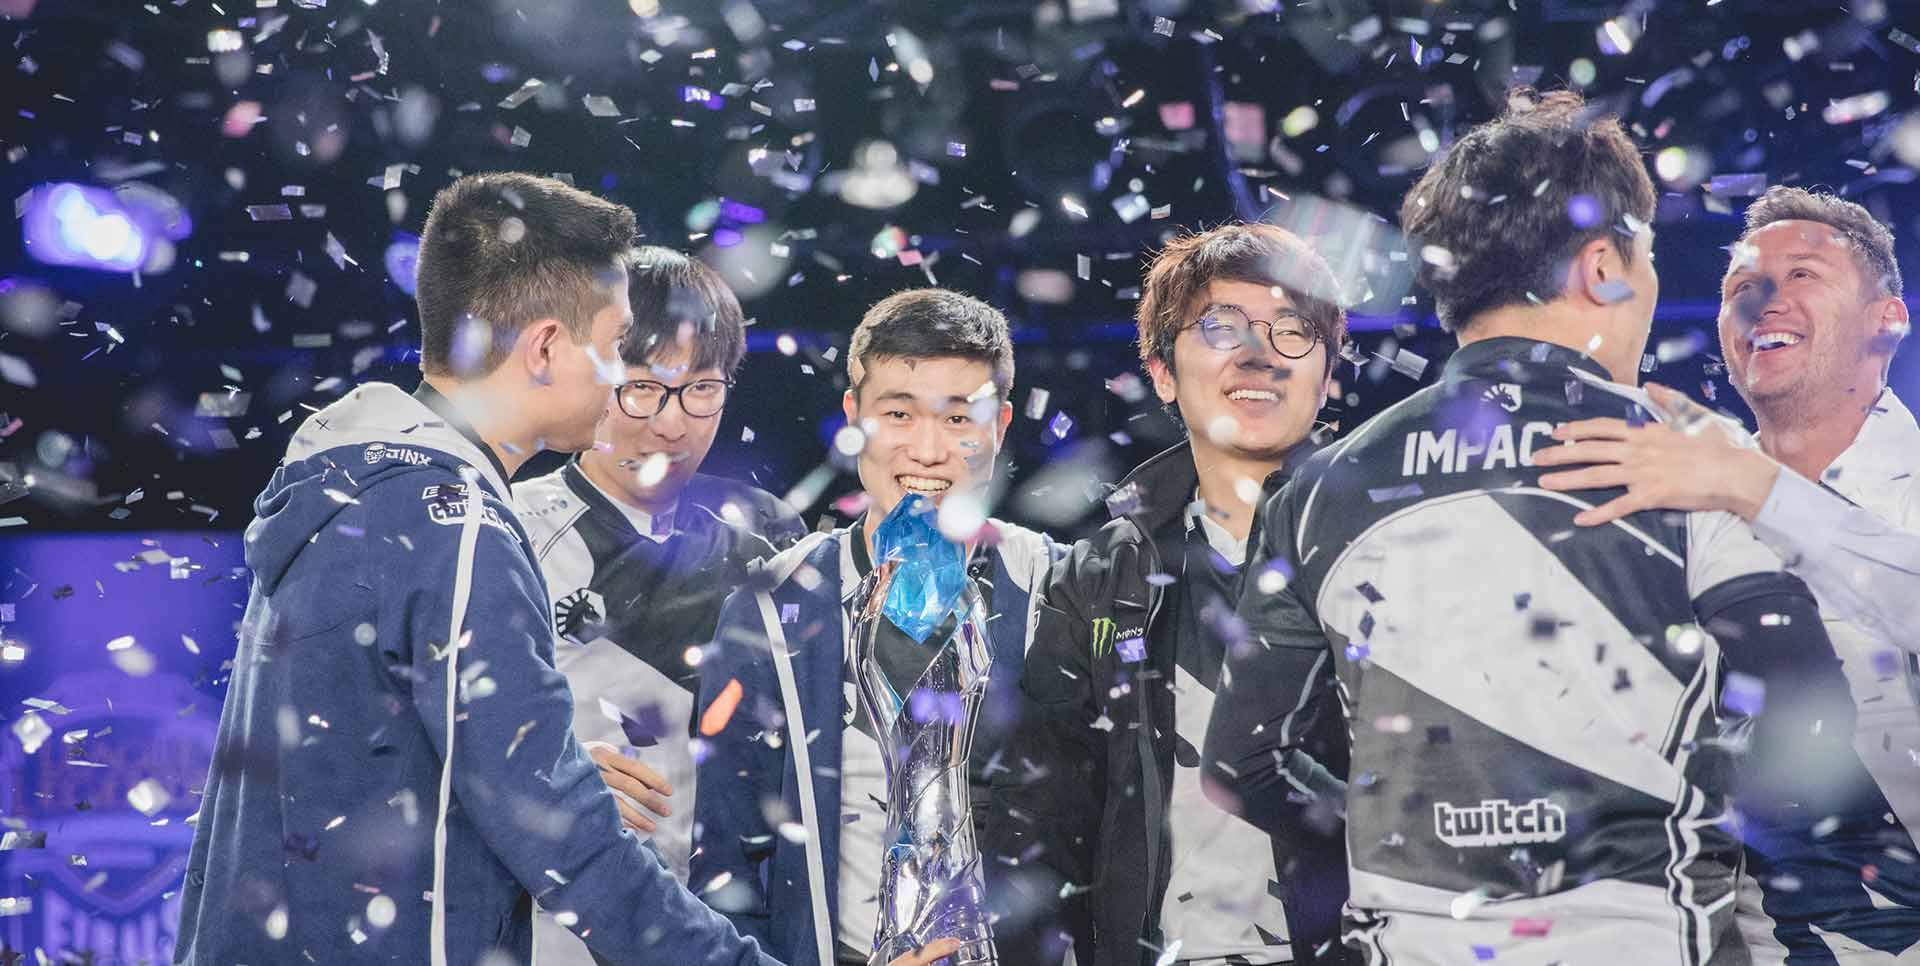 Een esports-team viert hun overwinning omgeven door confetti, de glimlach en het teamgevoel zijn duidelijk terwijl één speler de trofee vasthoudt.